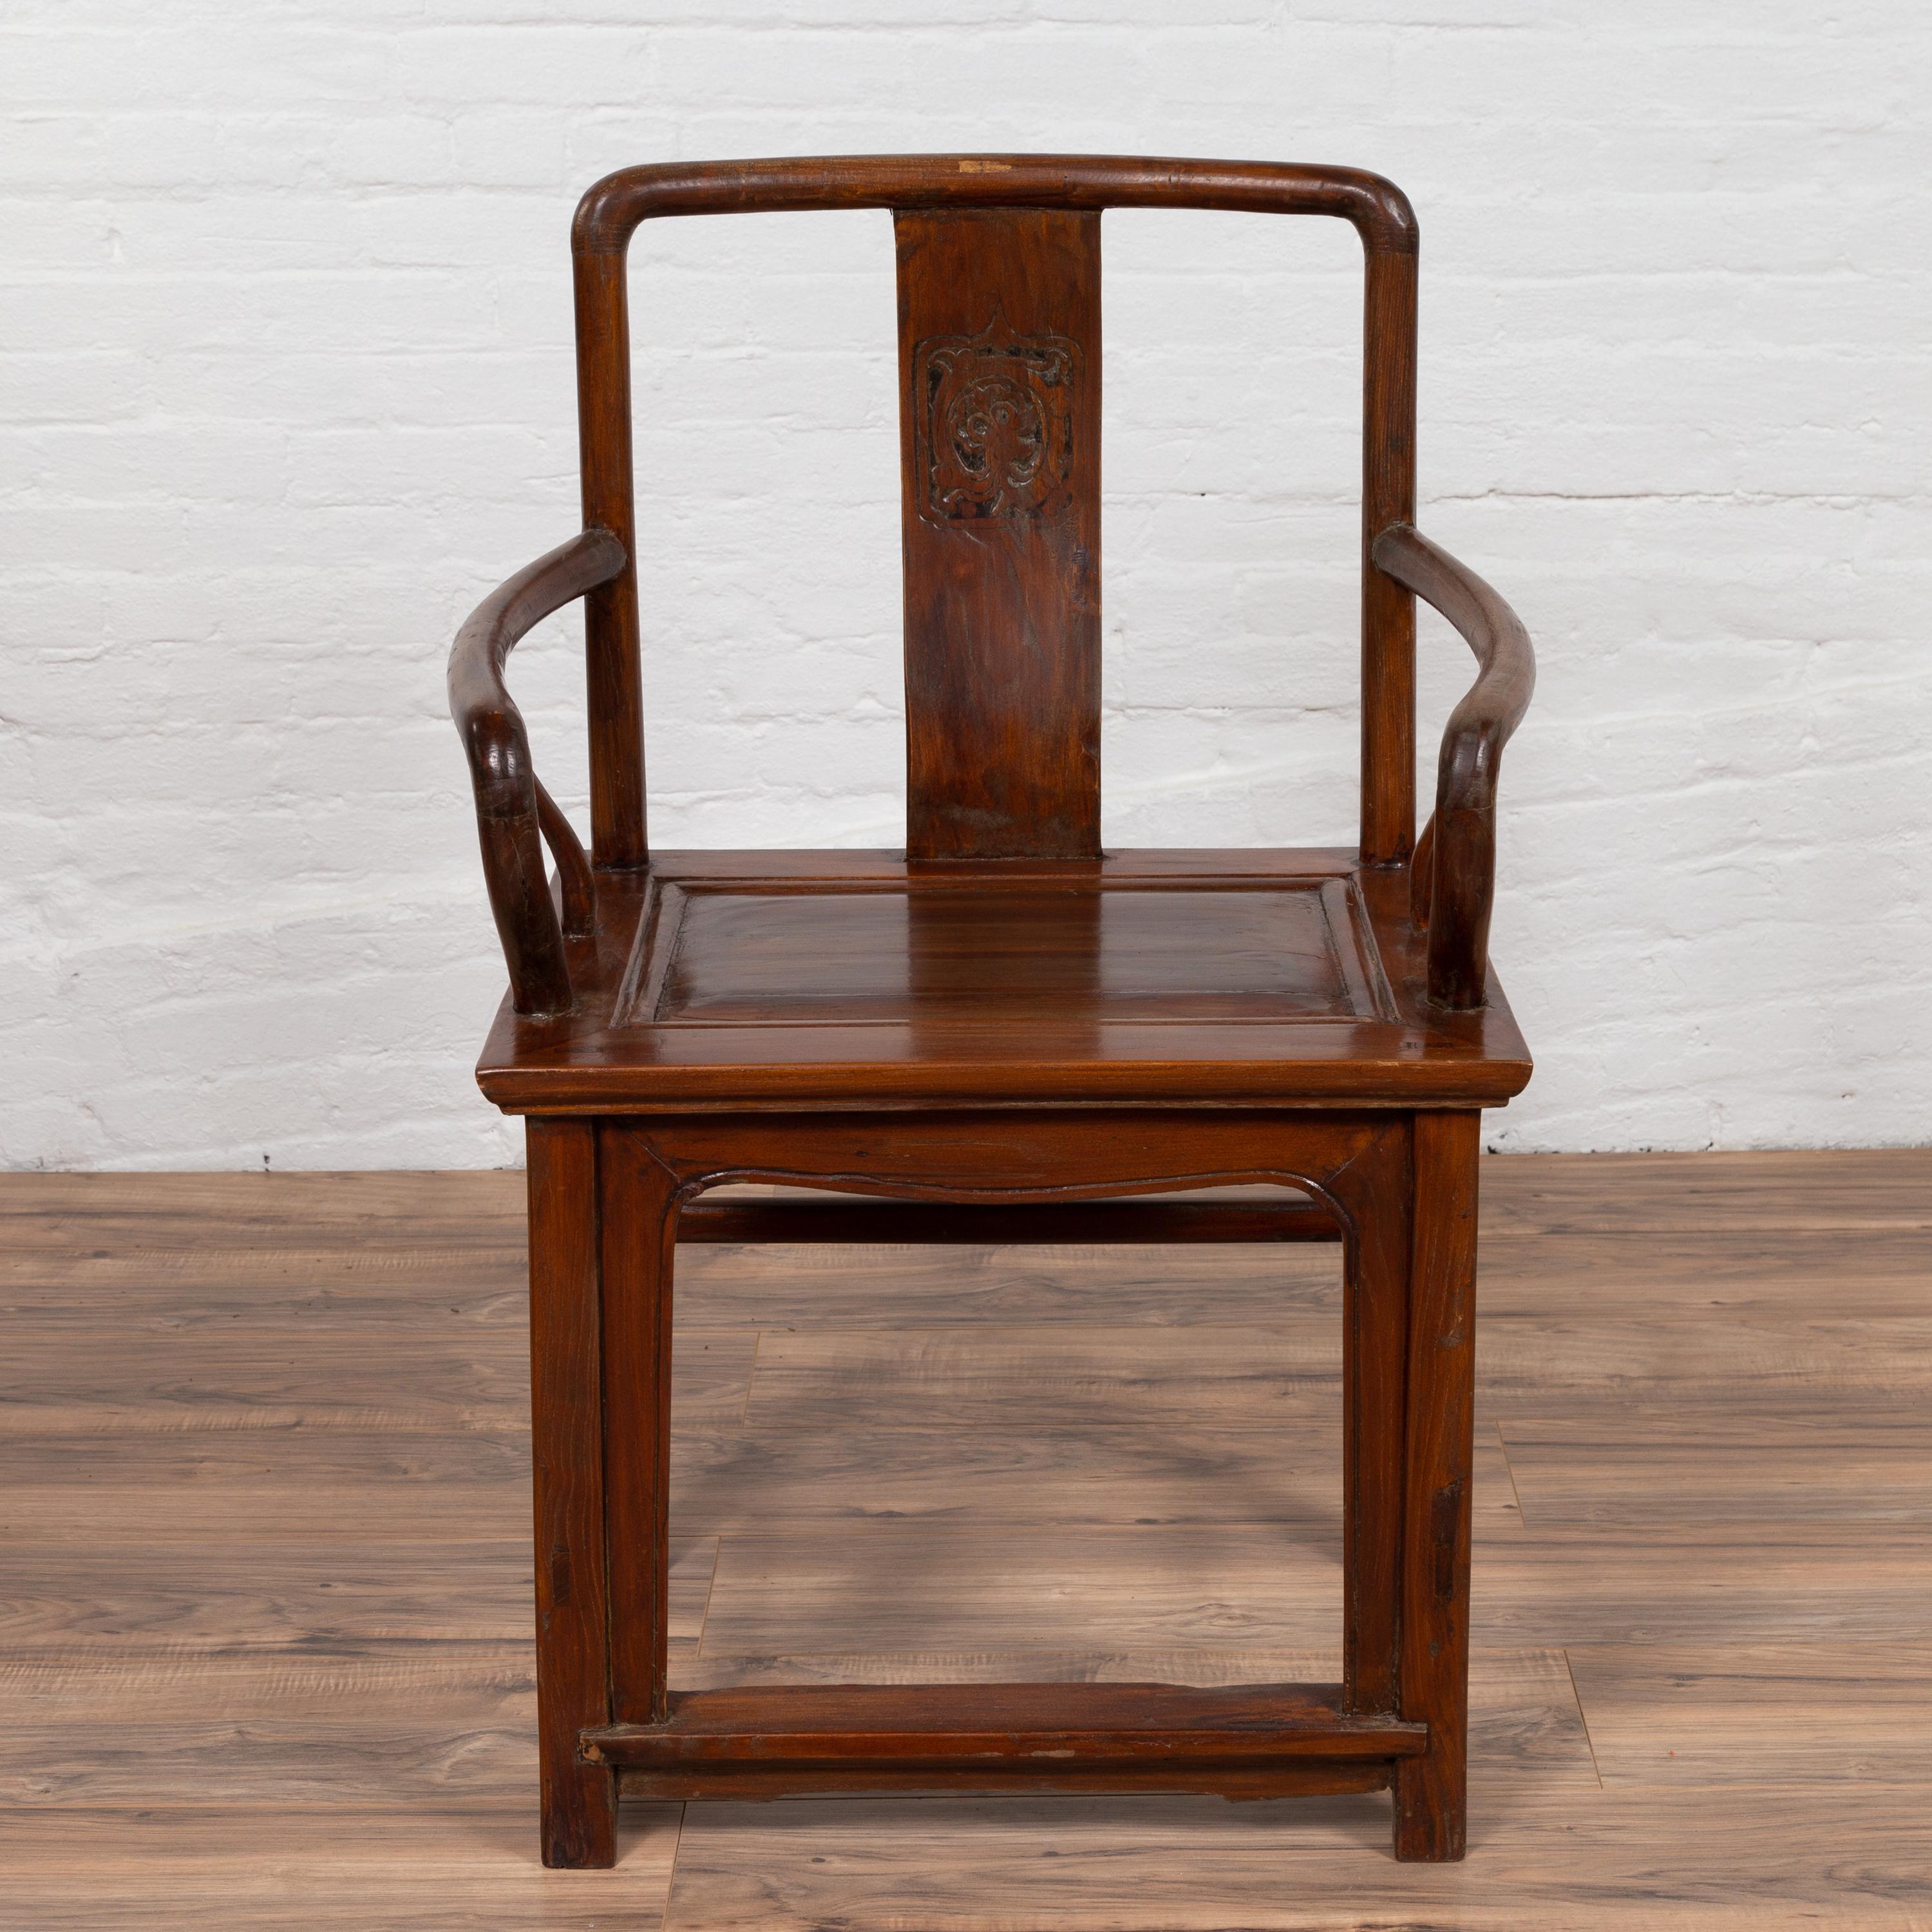 Ancienne chaise de mariage en bois de style dynastie Ming chinoise du début du 20e siècle, avec médaillon sculpté, accoudoirs incurvés et patine naturelle du bois. Né en Chine dans les premières années du XXe siècle, ce fauteuil exquis présente un